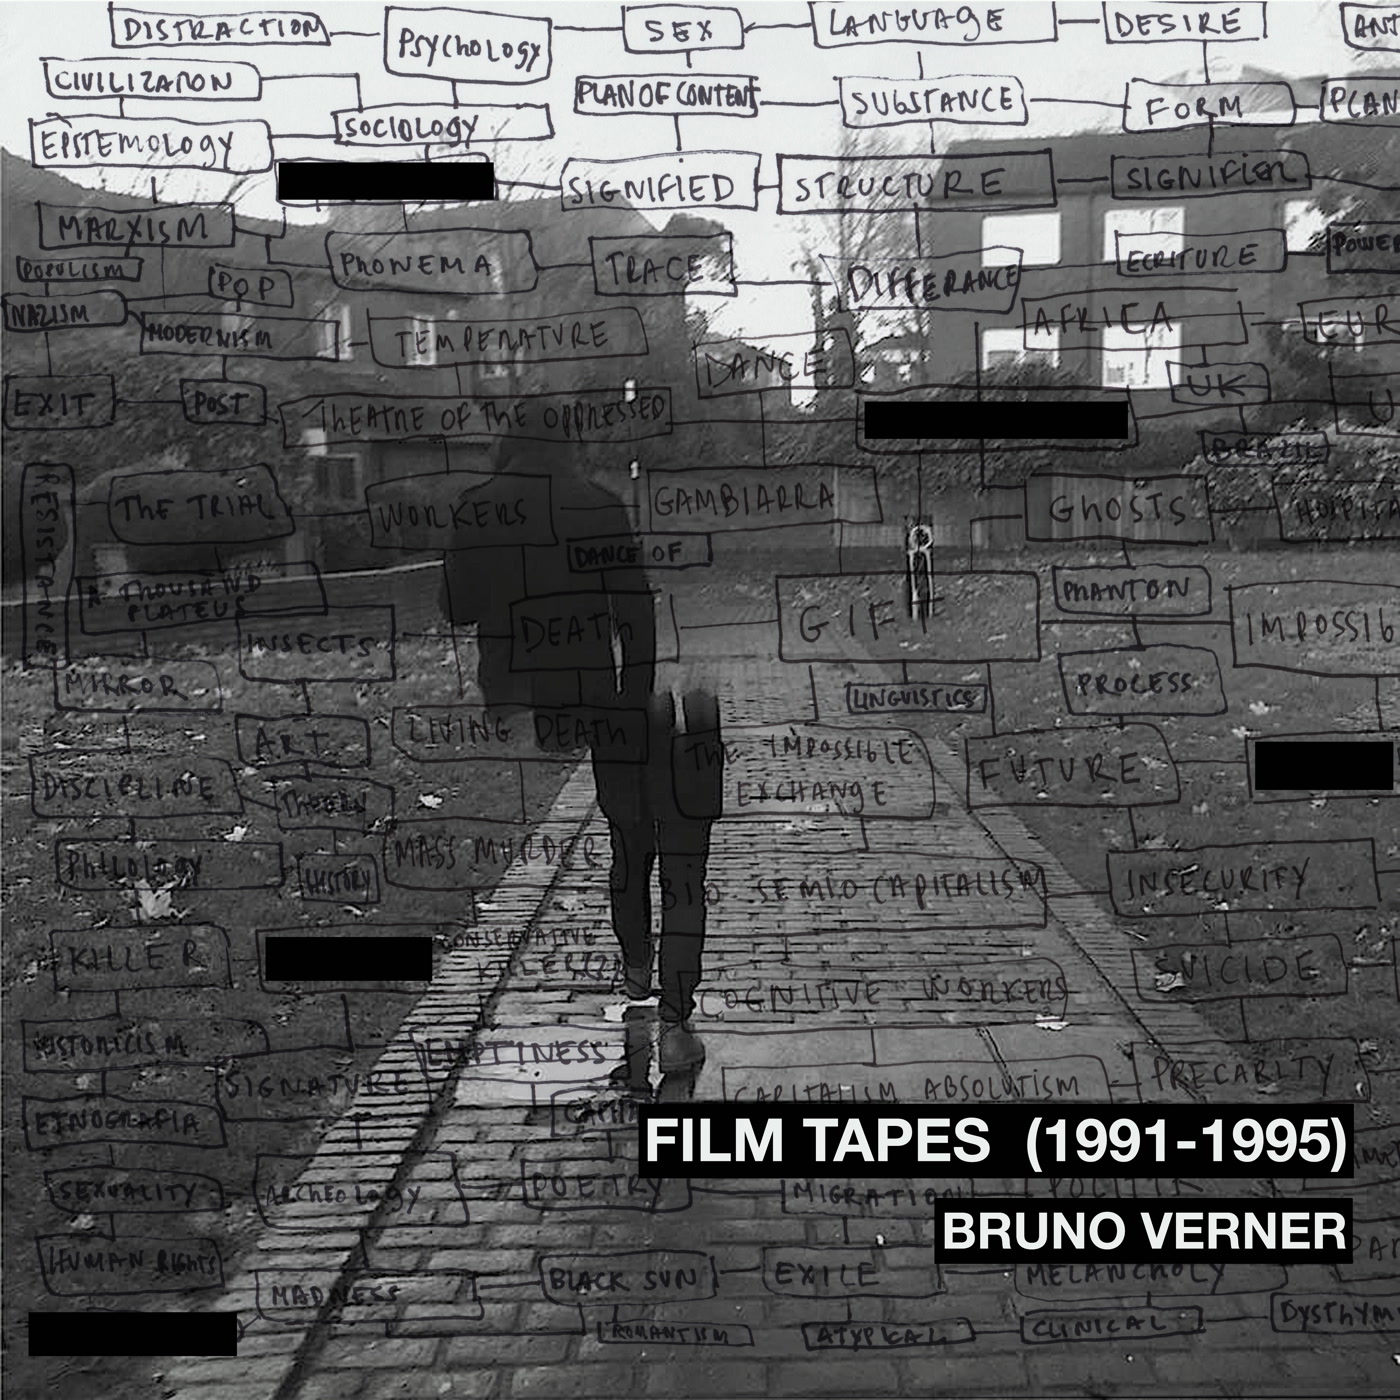 bruno-verner-film-tapes-1991-1995.jpg